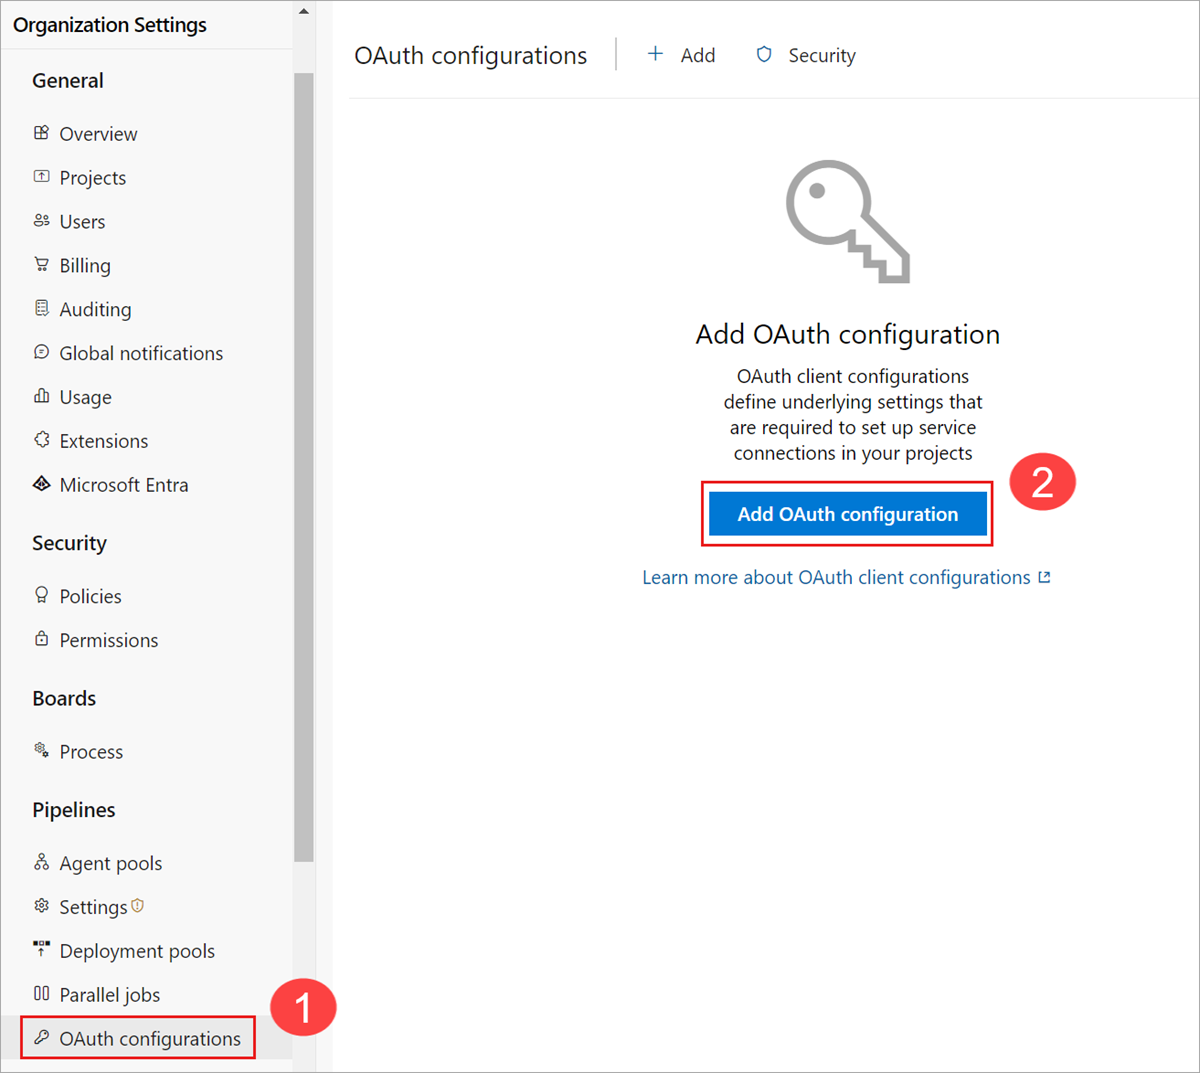 Captura de pantalla de Configuración de organización abierta, configuraciones de OAuth.